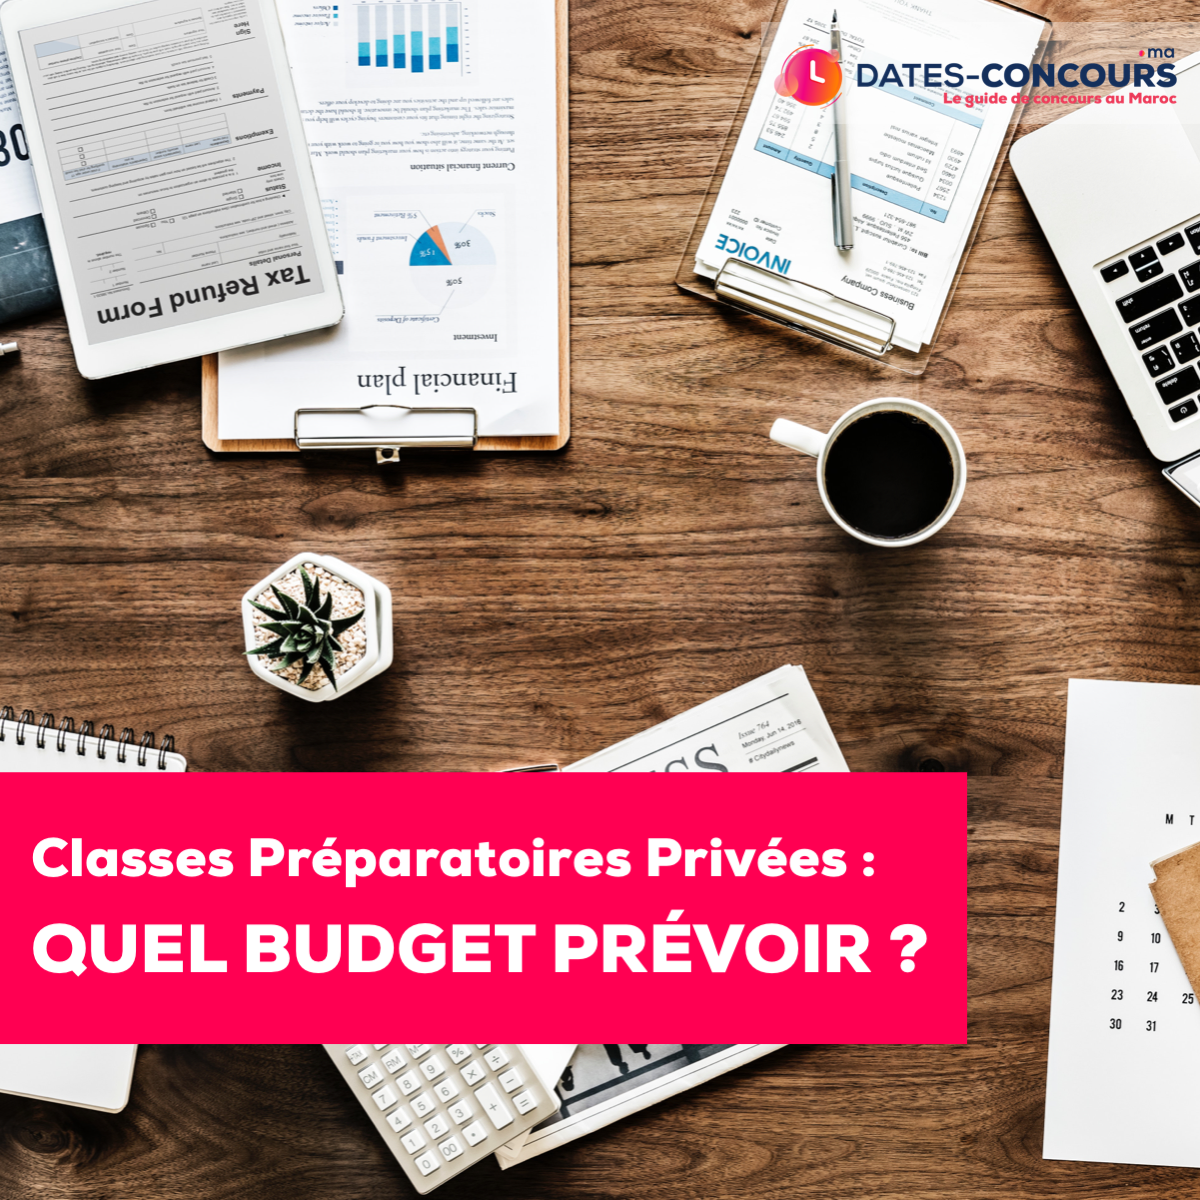 Quel budget pour les classes préparatoires privées au Maroc ?